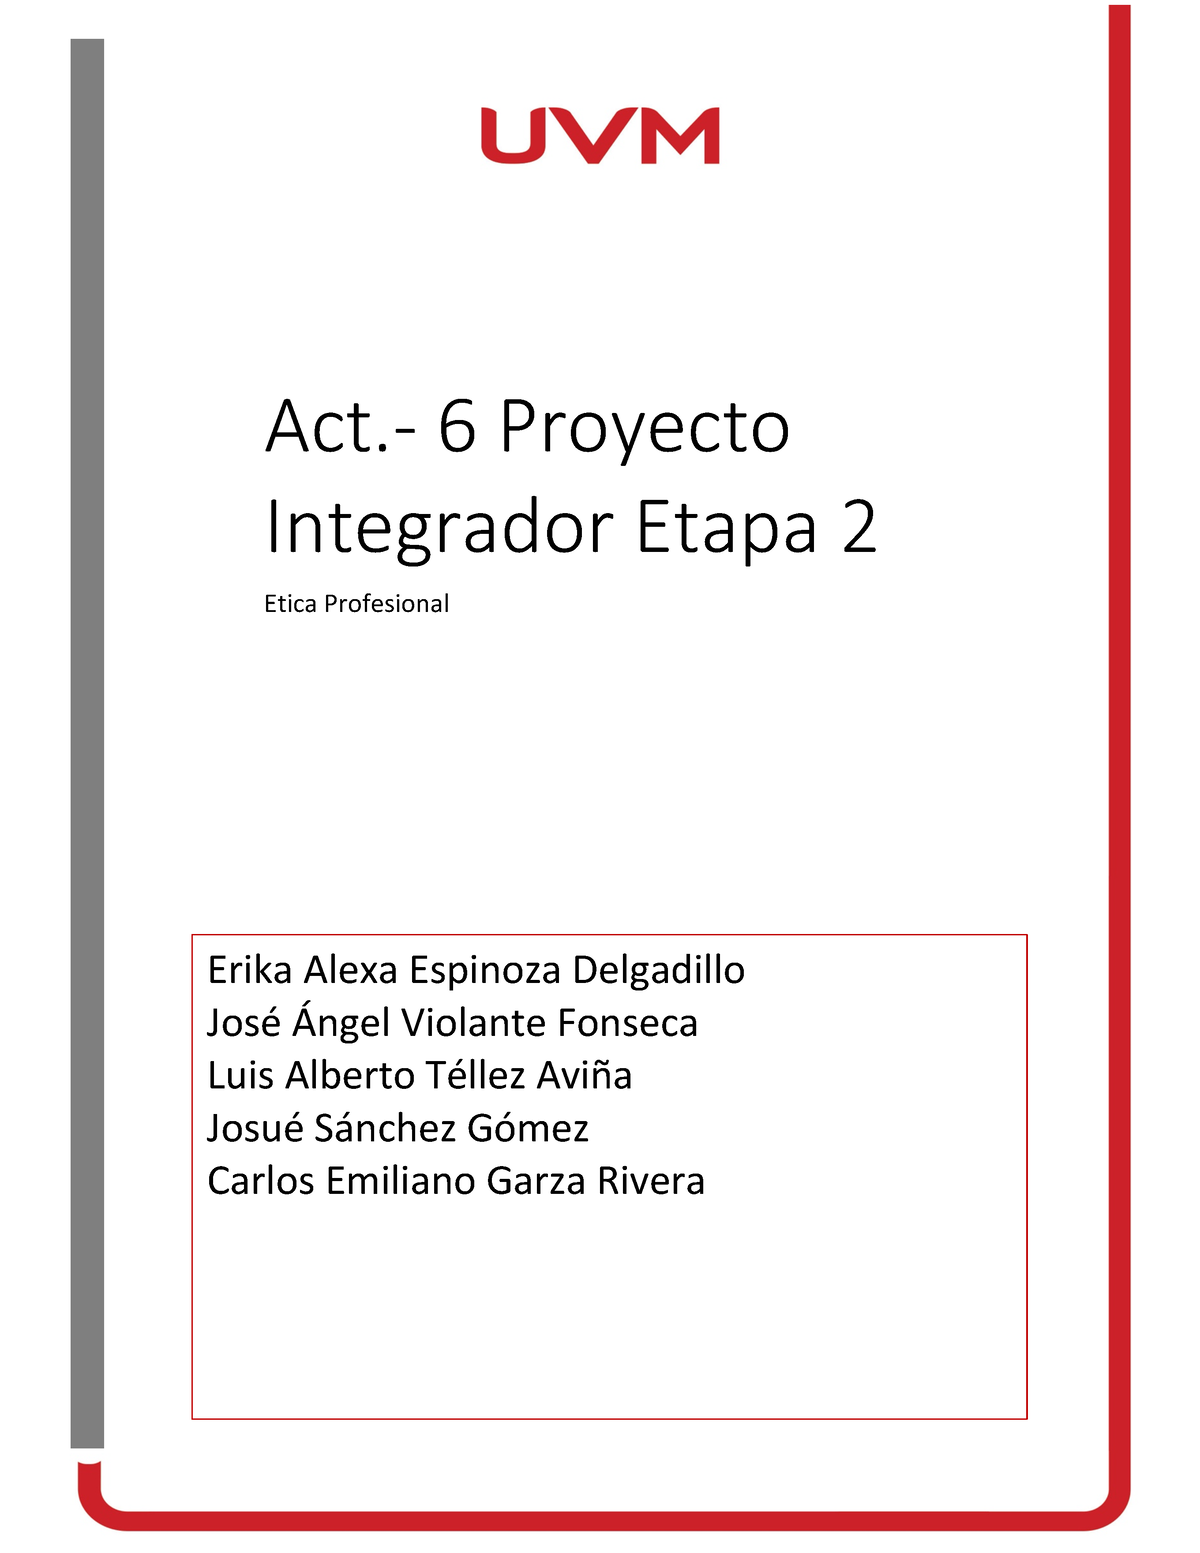 Act 6 Etica Act 6 Proyecto Integrador Etapa 2 Etica Profesional Erika Alexa Espinoza 3816